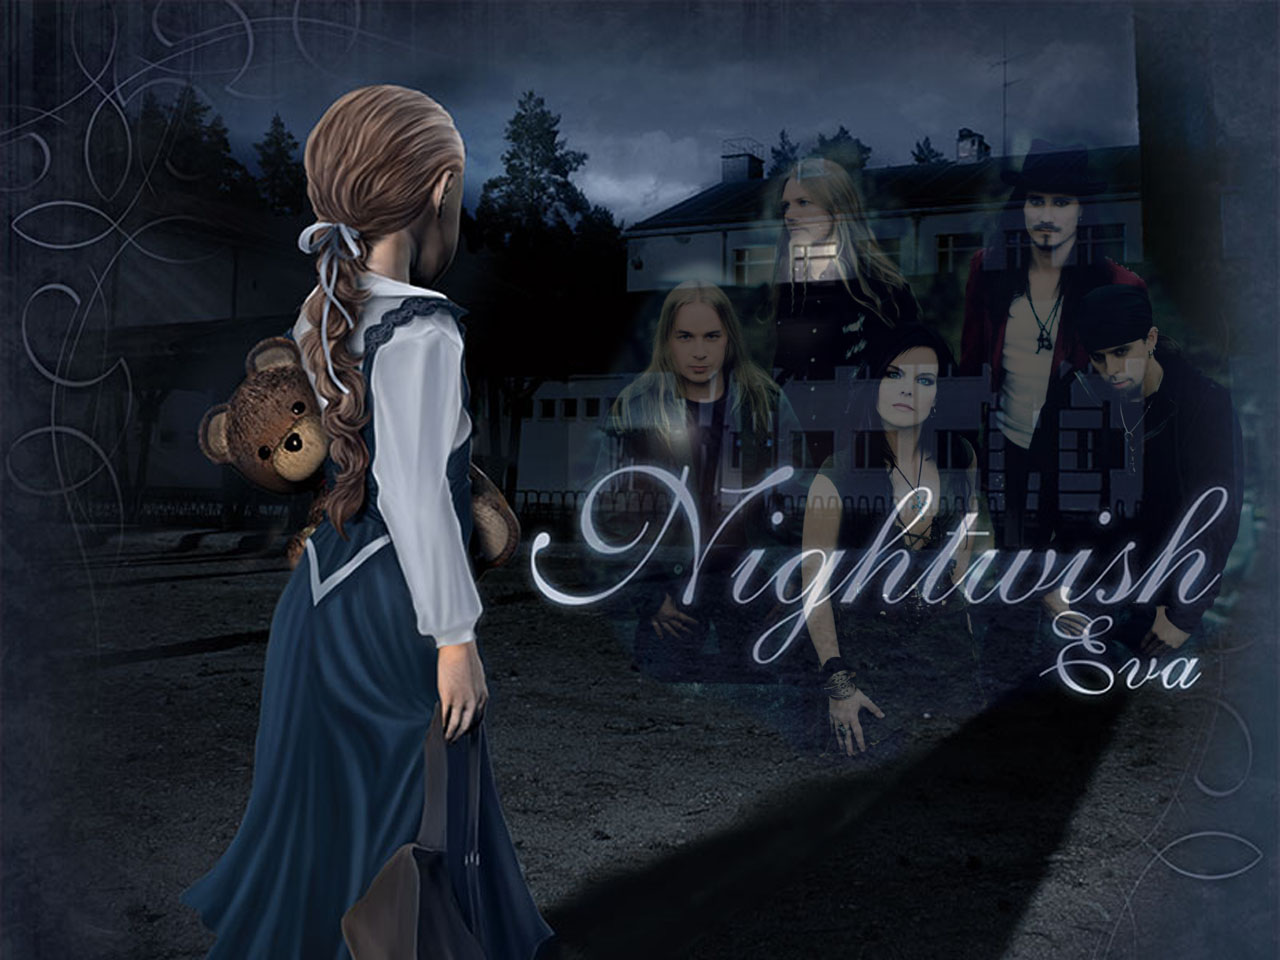 Free download wallpaper Music, Nightwish on your PC desktop